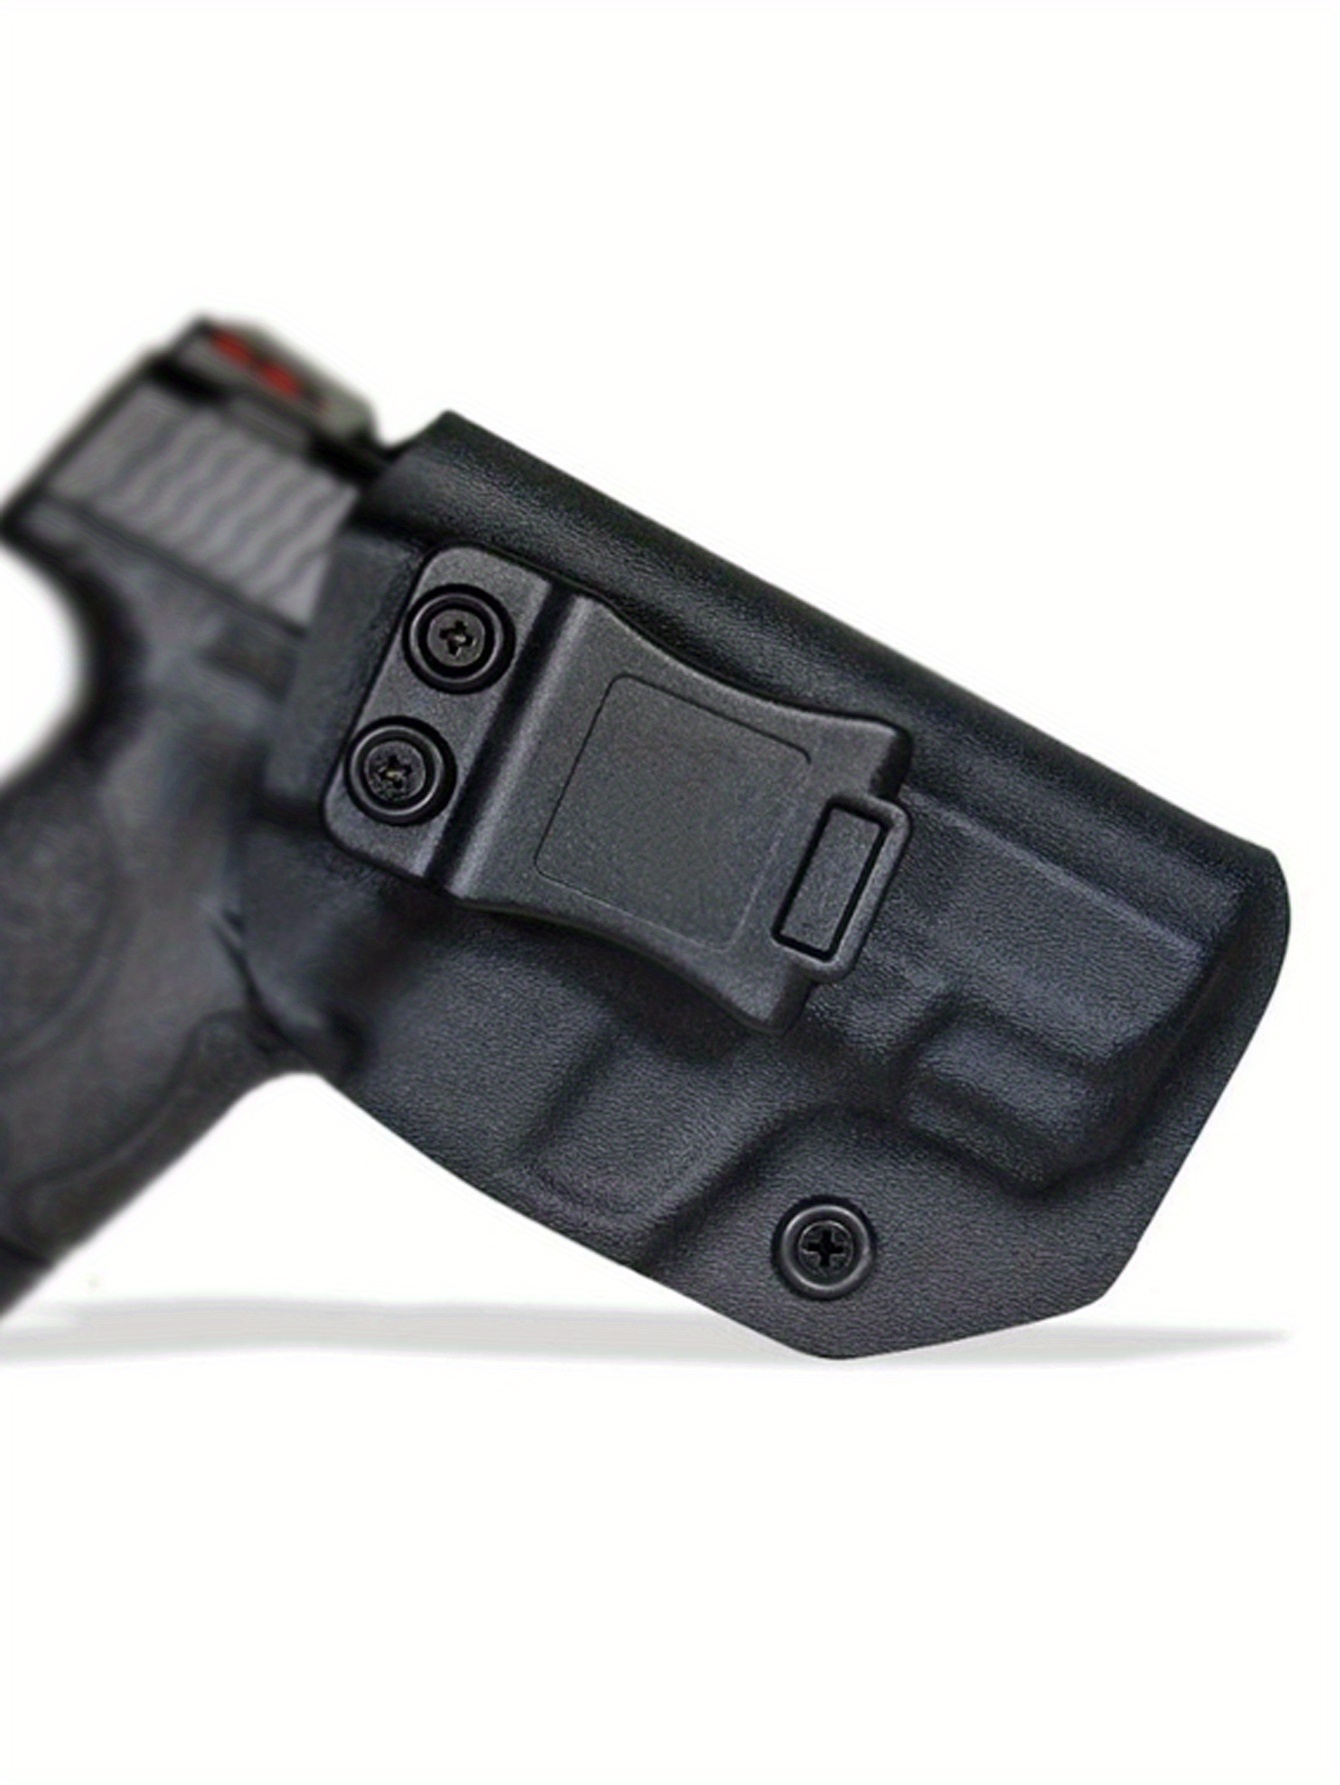  HOLSTIT Funda para pistola de mano, hecha a mano en Carolina  del Norte, ajuste cómodo y seguro, fundas KYDEX de extracción rápida para  pistolas - Compatible con Smith & Wesson M&P